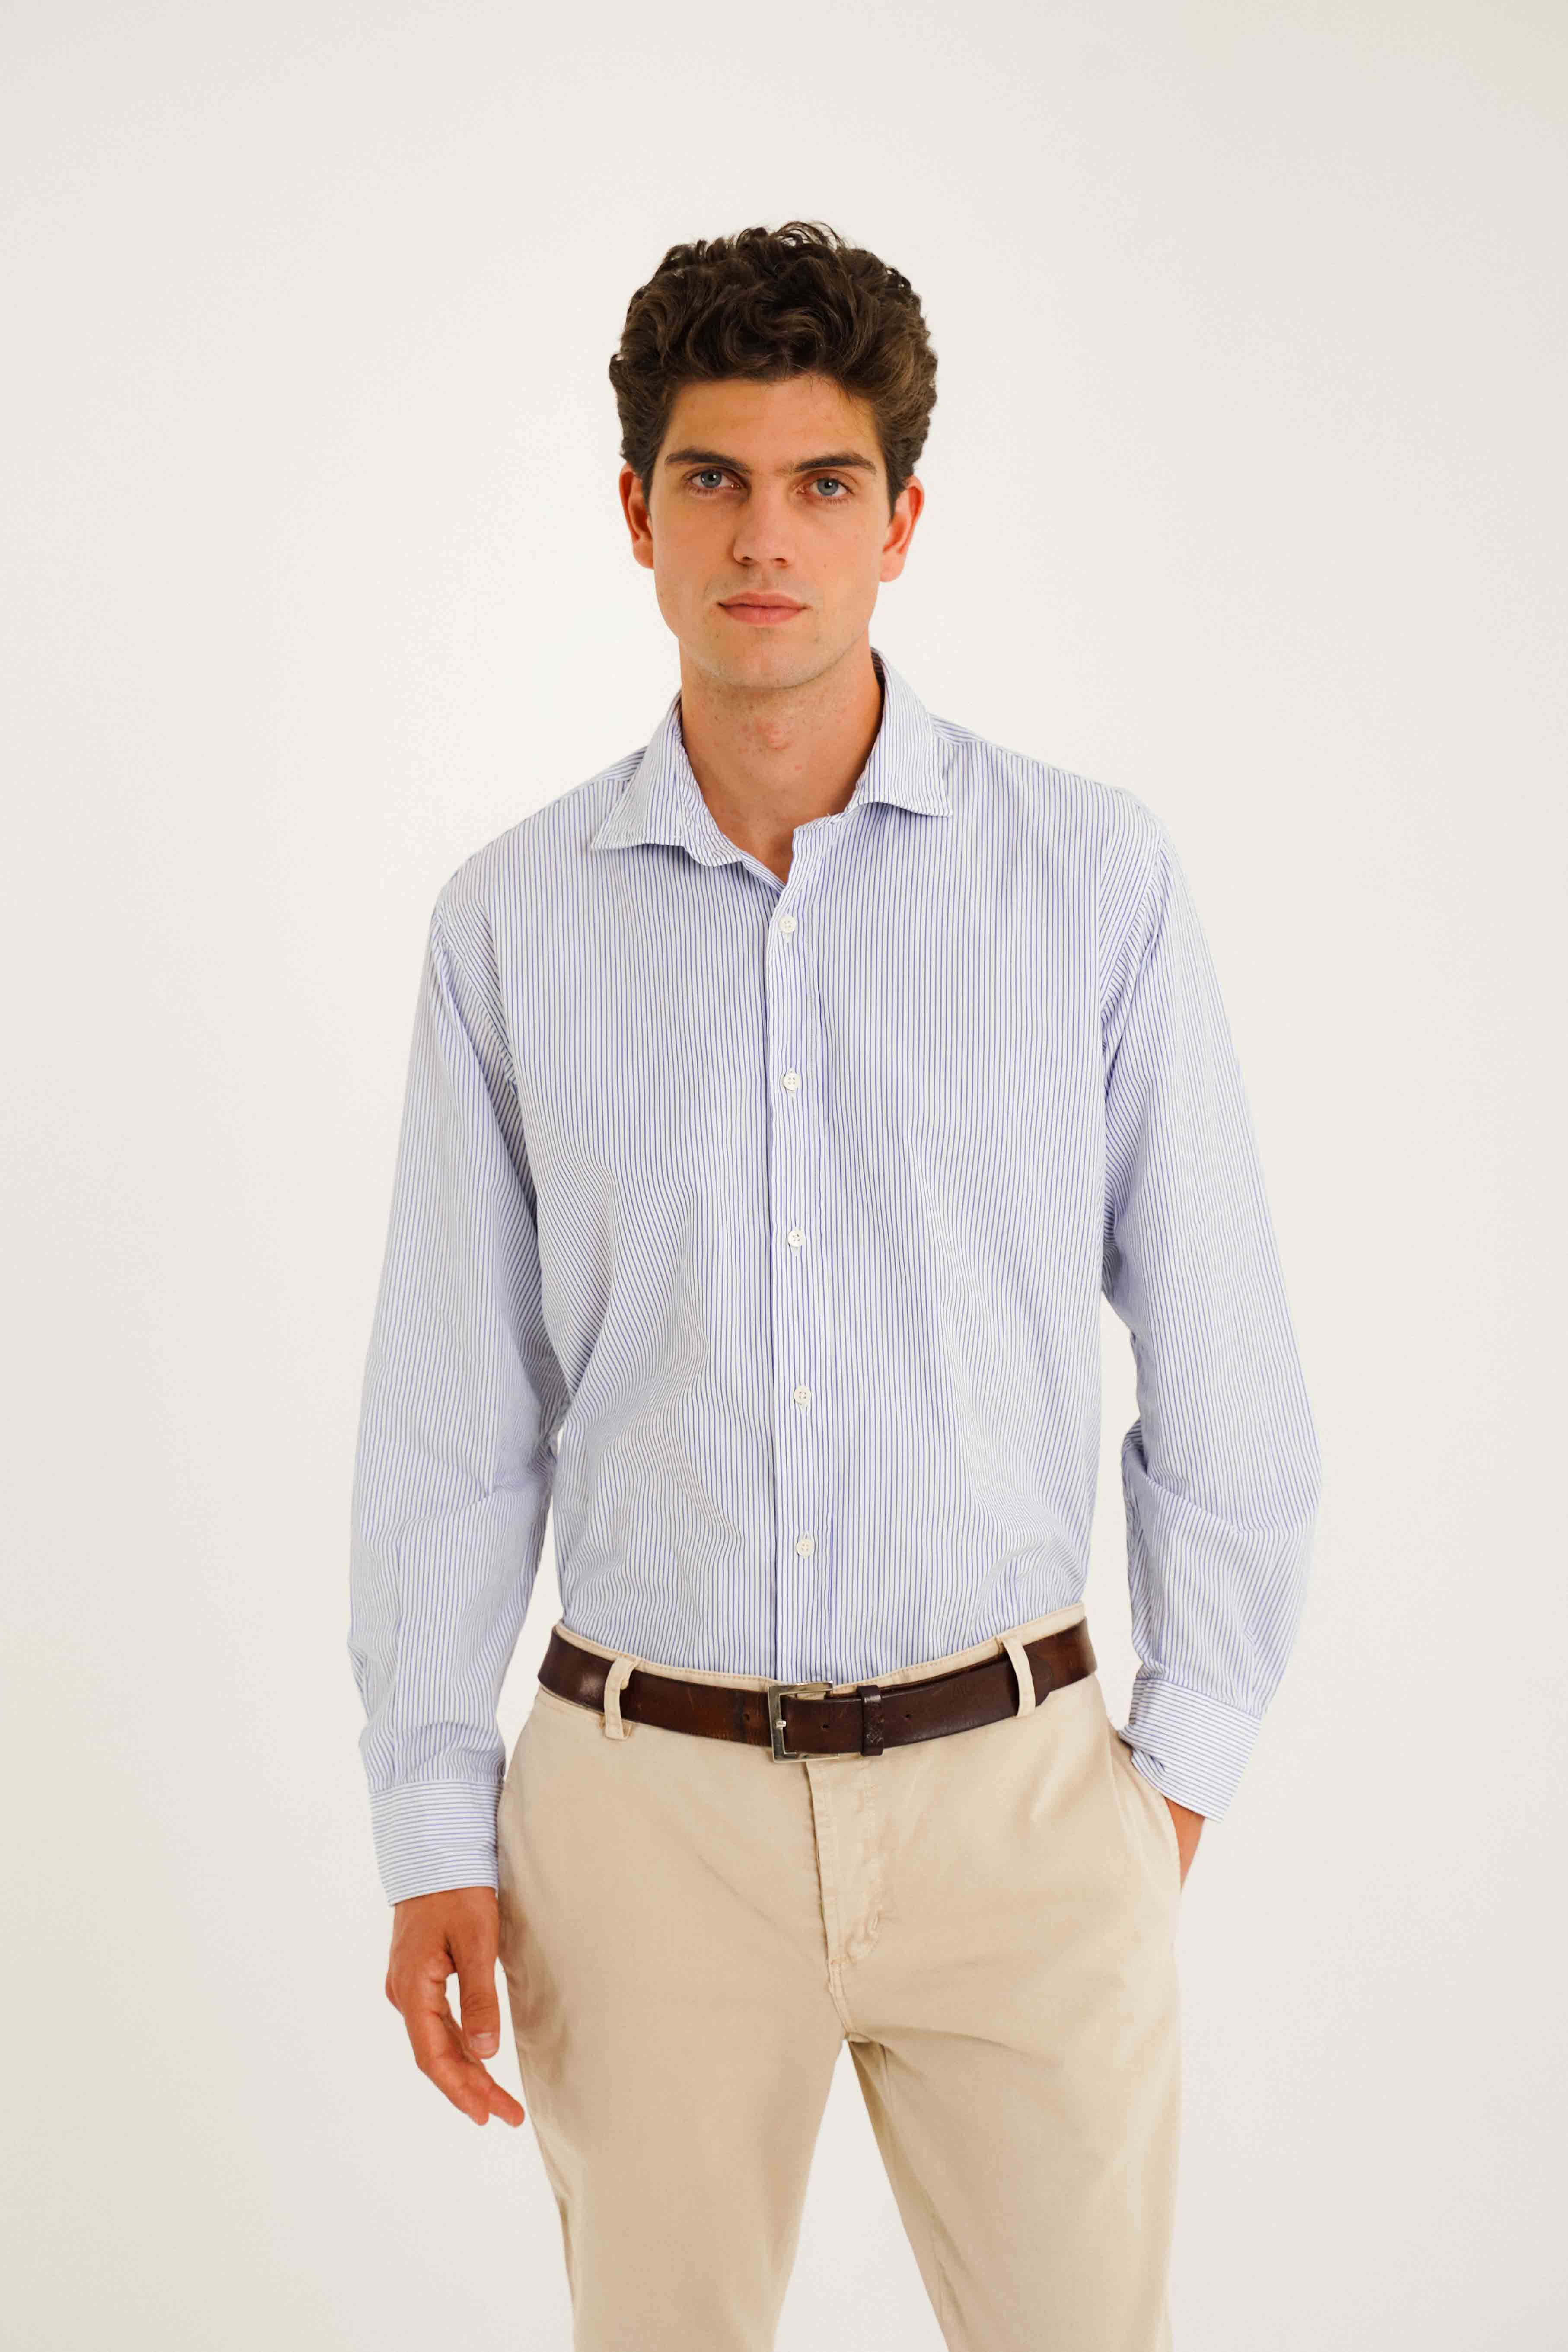 Camisa de Algodón - Rayas Azul y Blanco